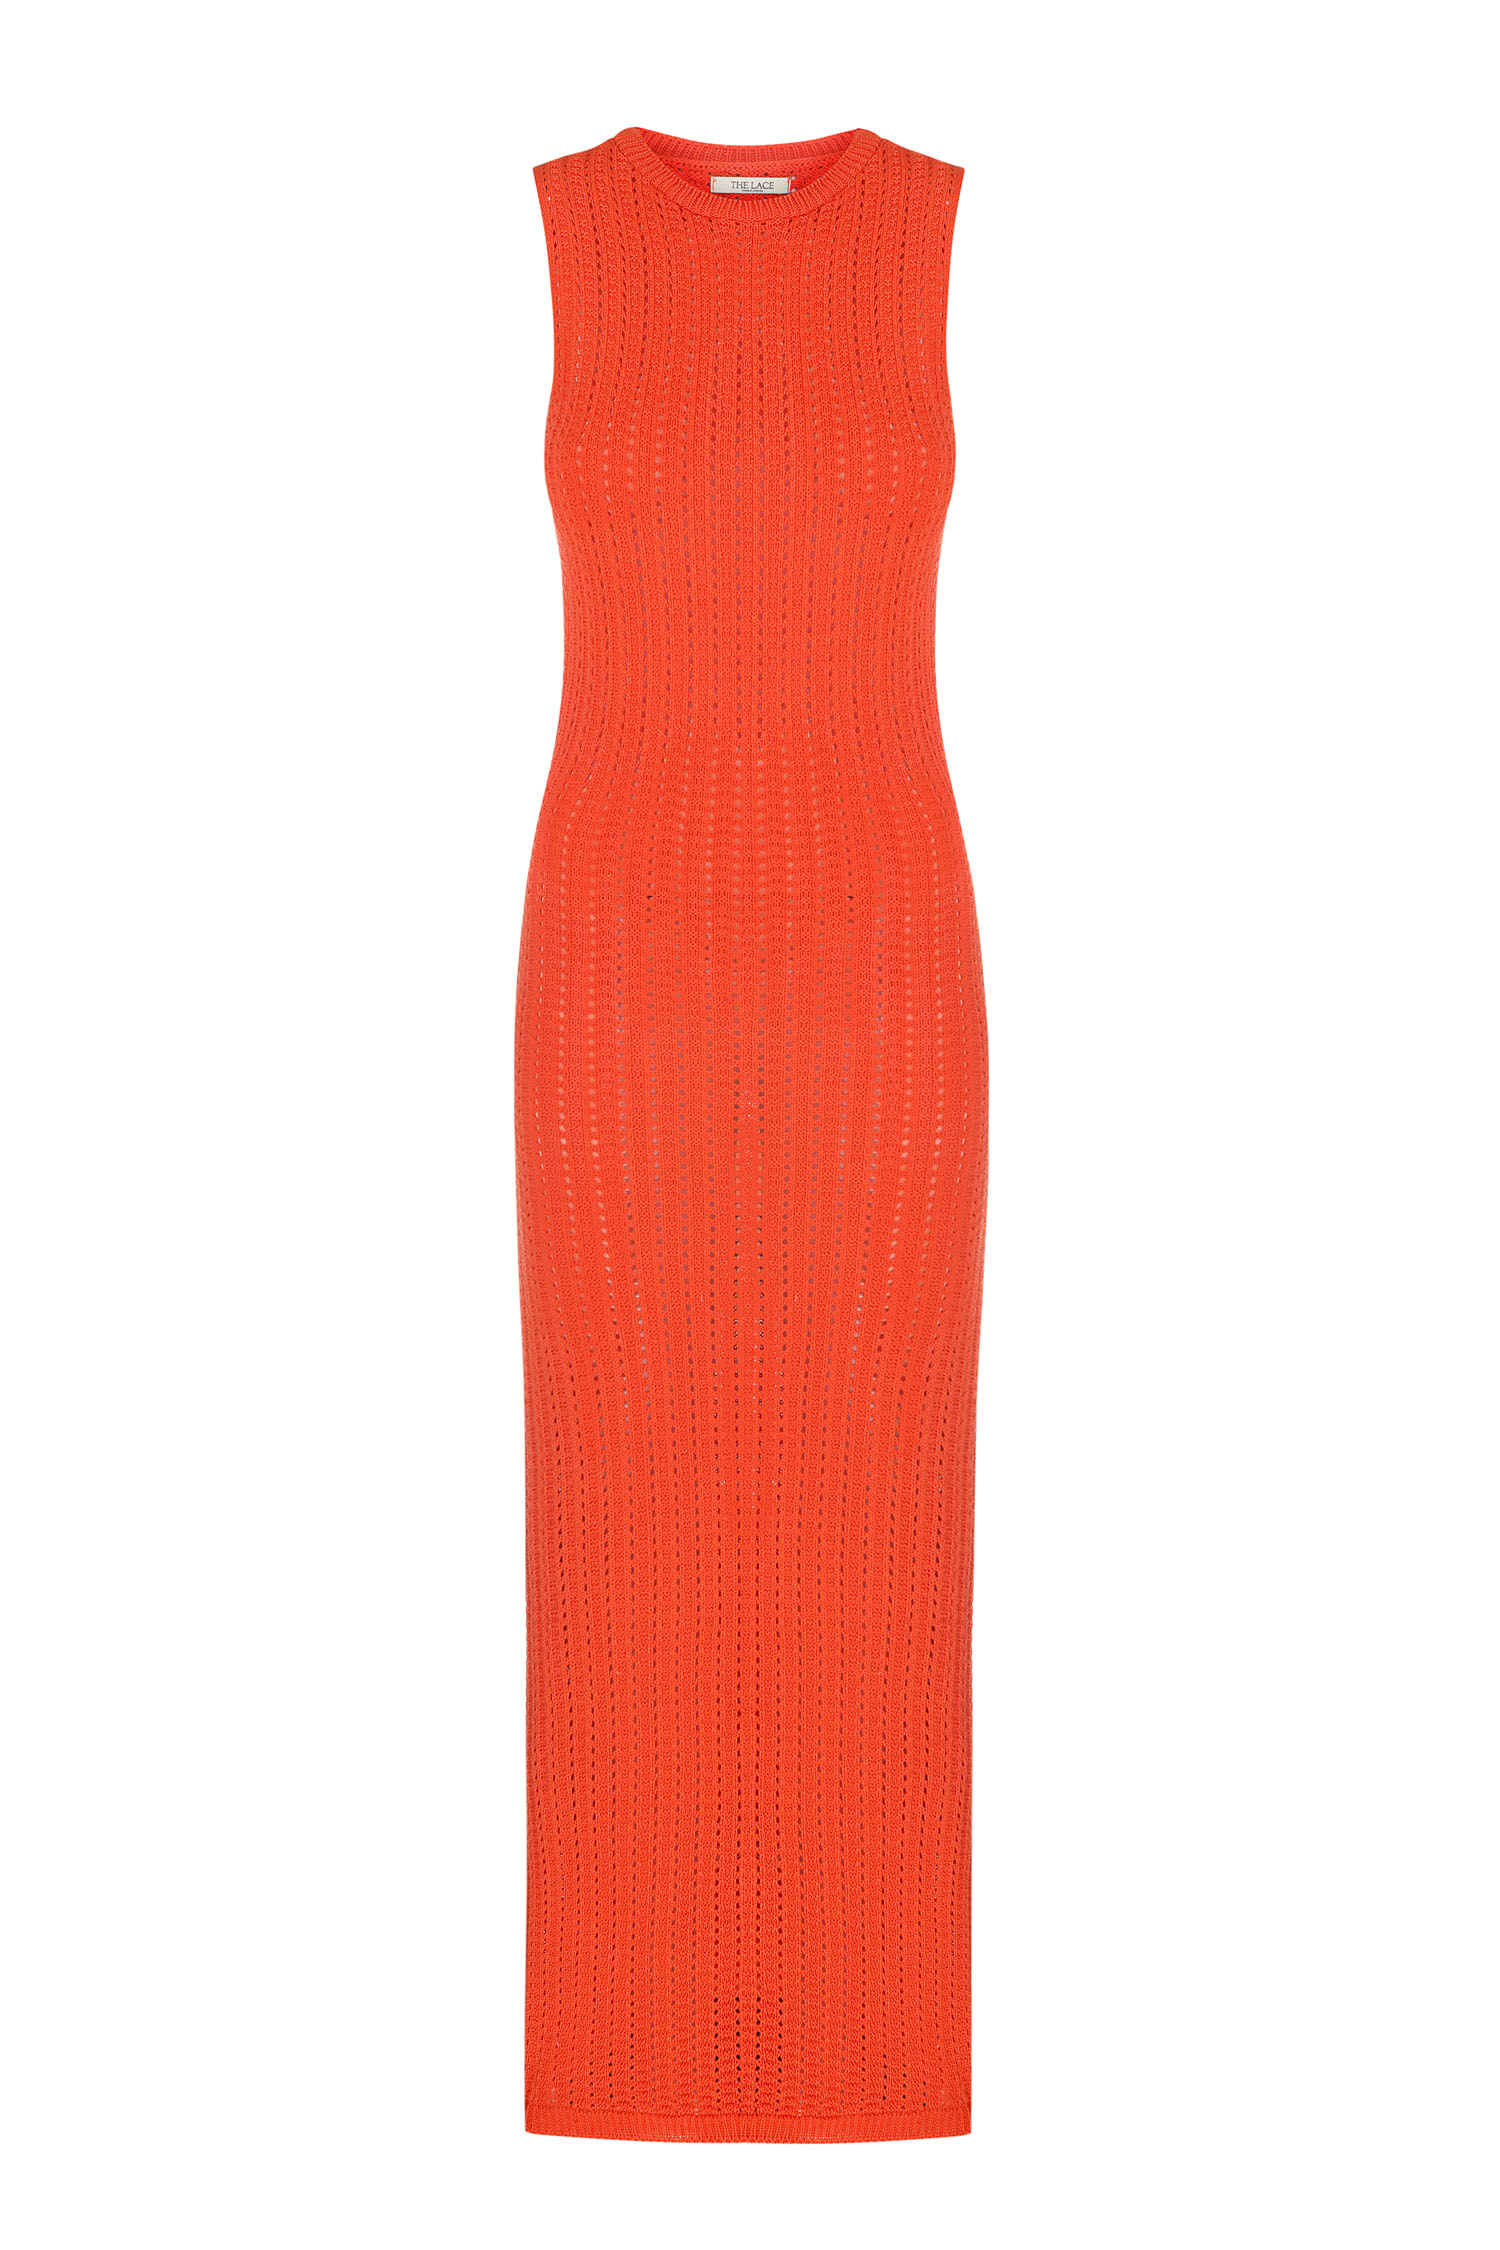 Трикотажна сукня максі з ажурною вʼязкою помаранчева - THE LACE photo 152680